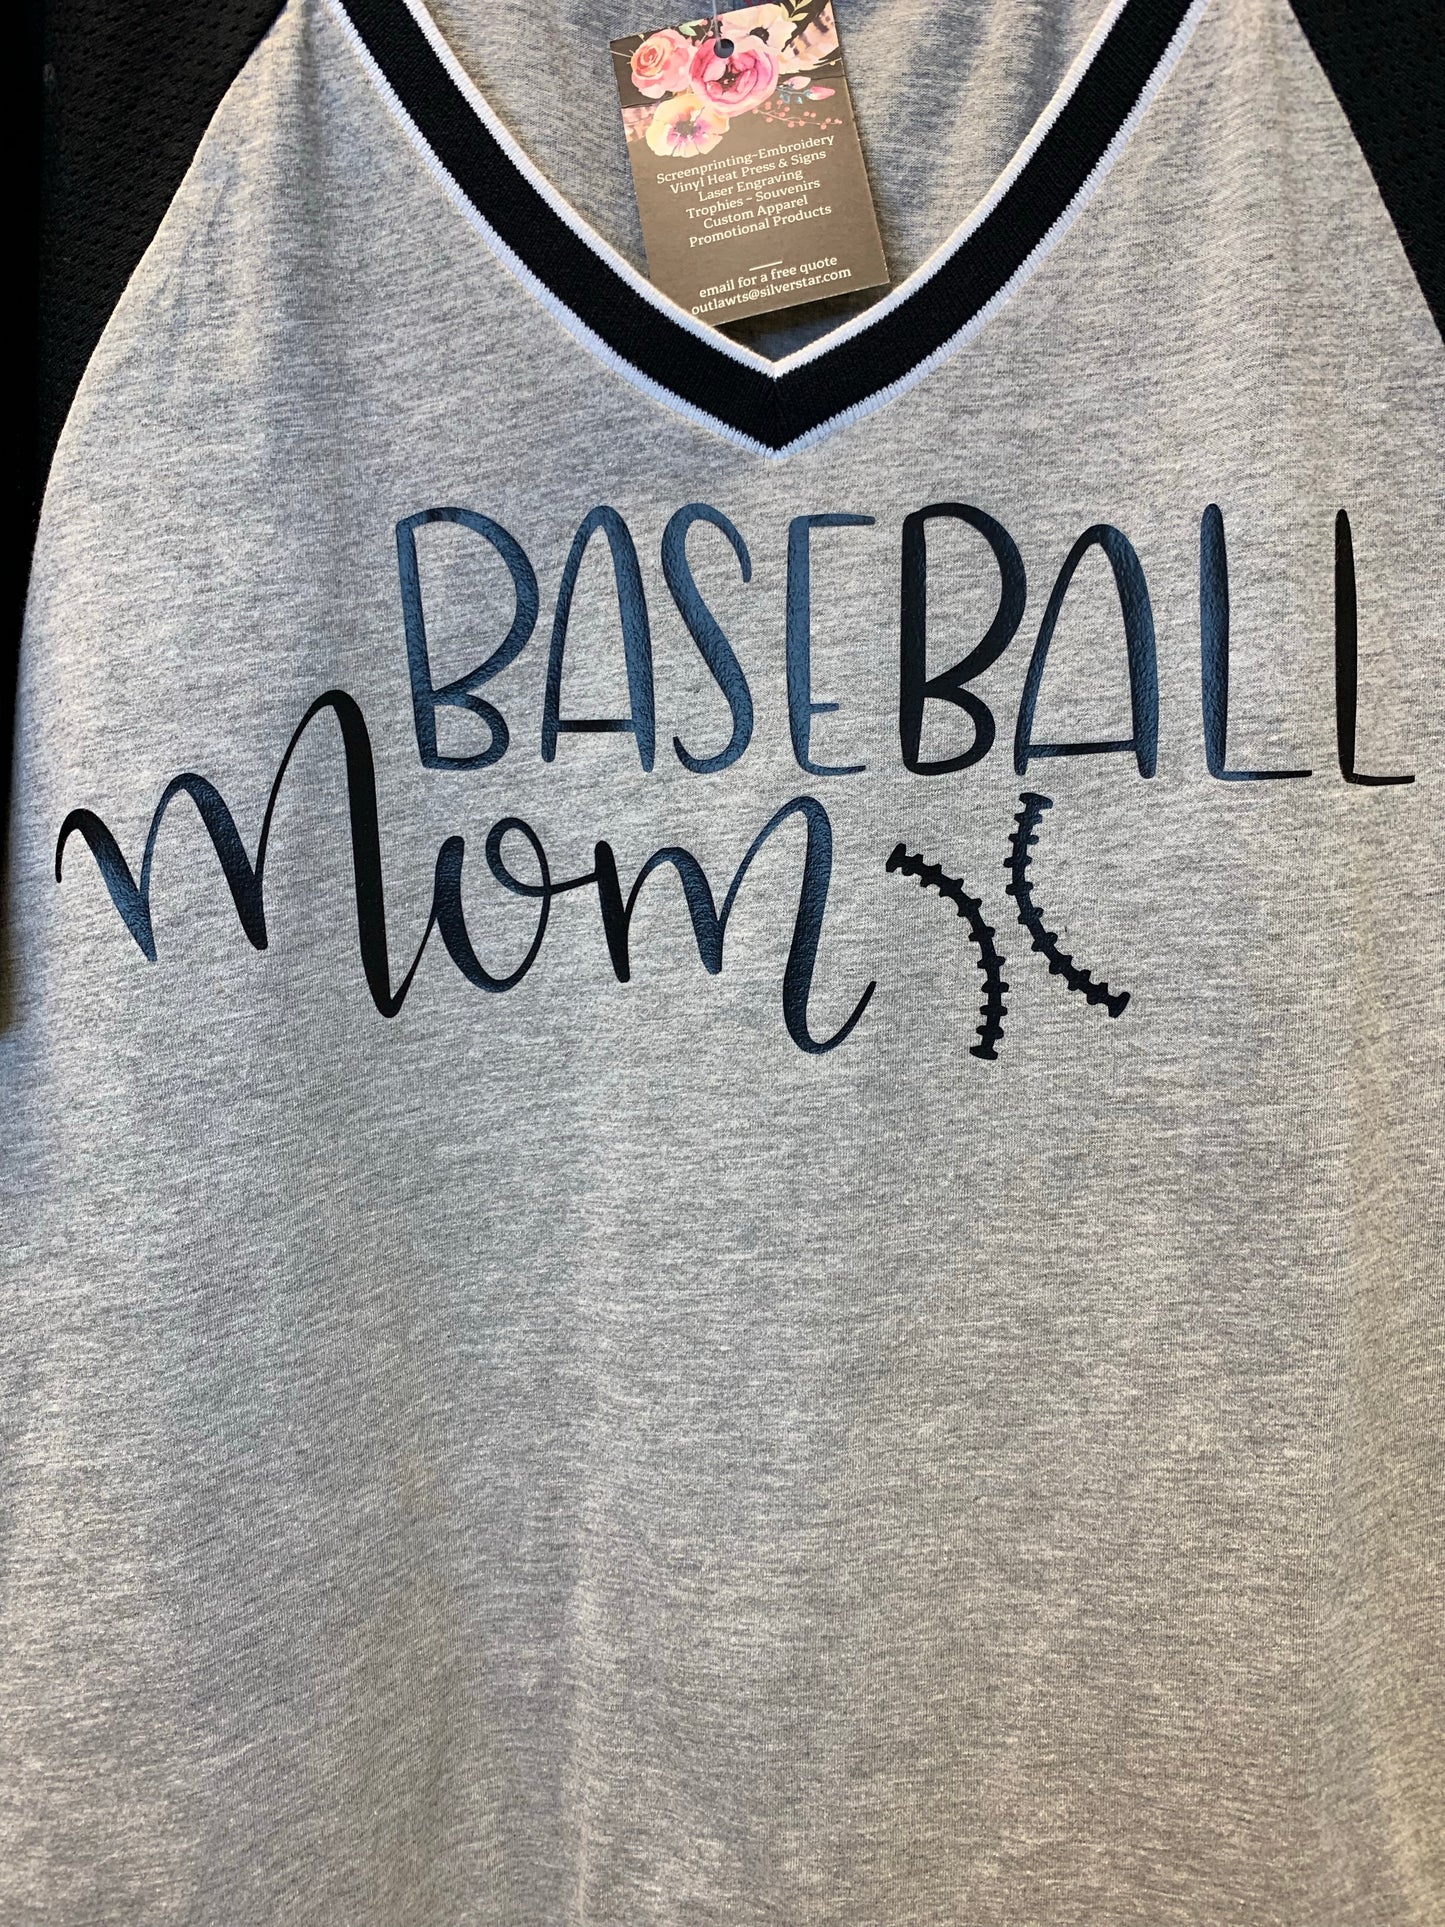 Baseball Mom Grey V-neck T-shirt Black Mesh Short Sleeve Adult Extra Large